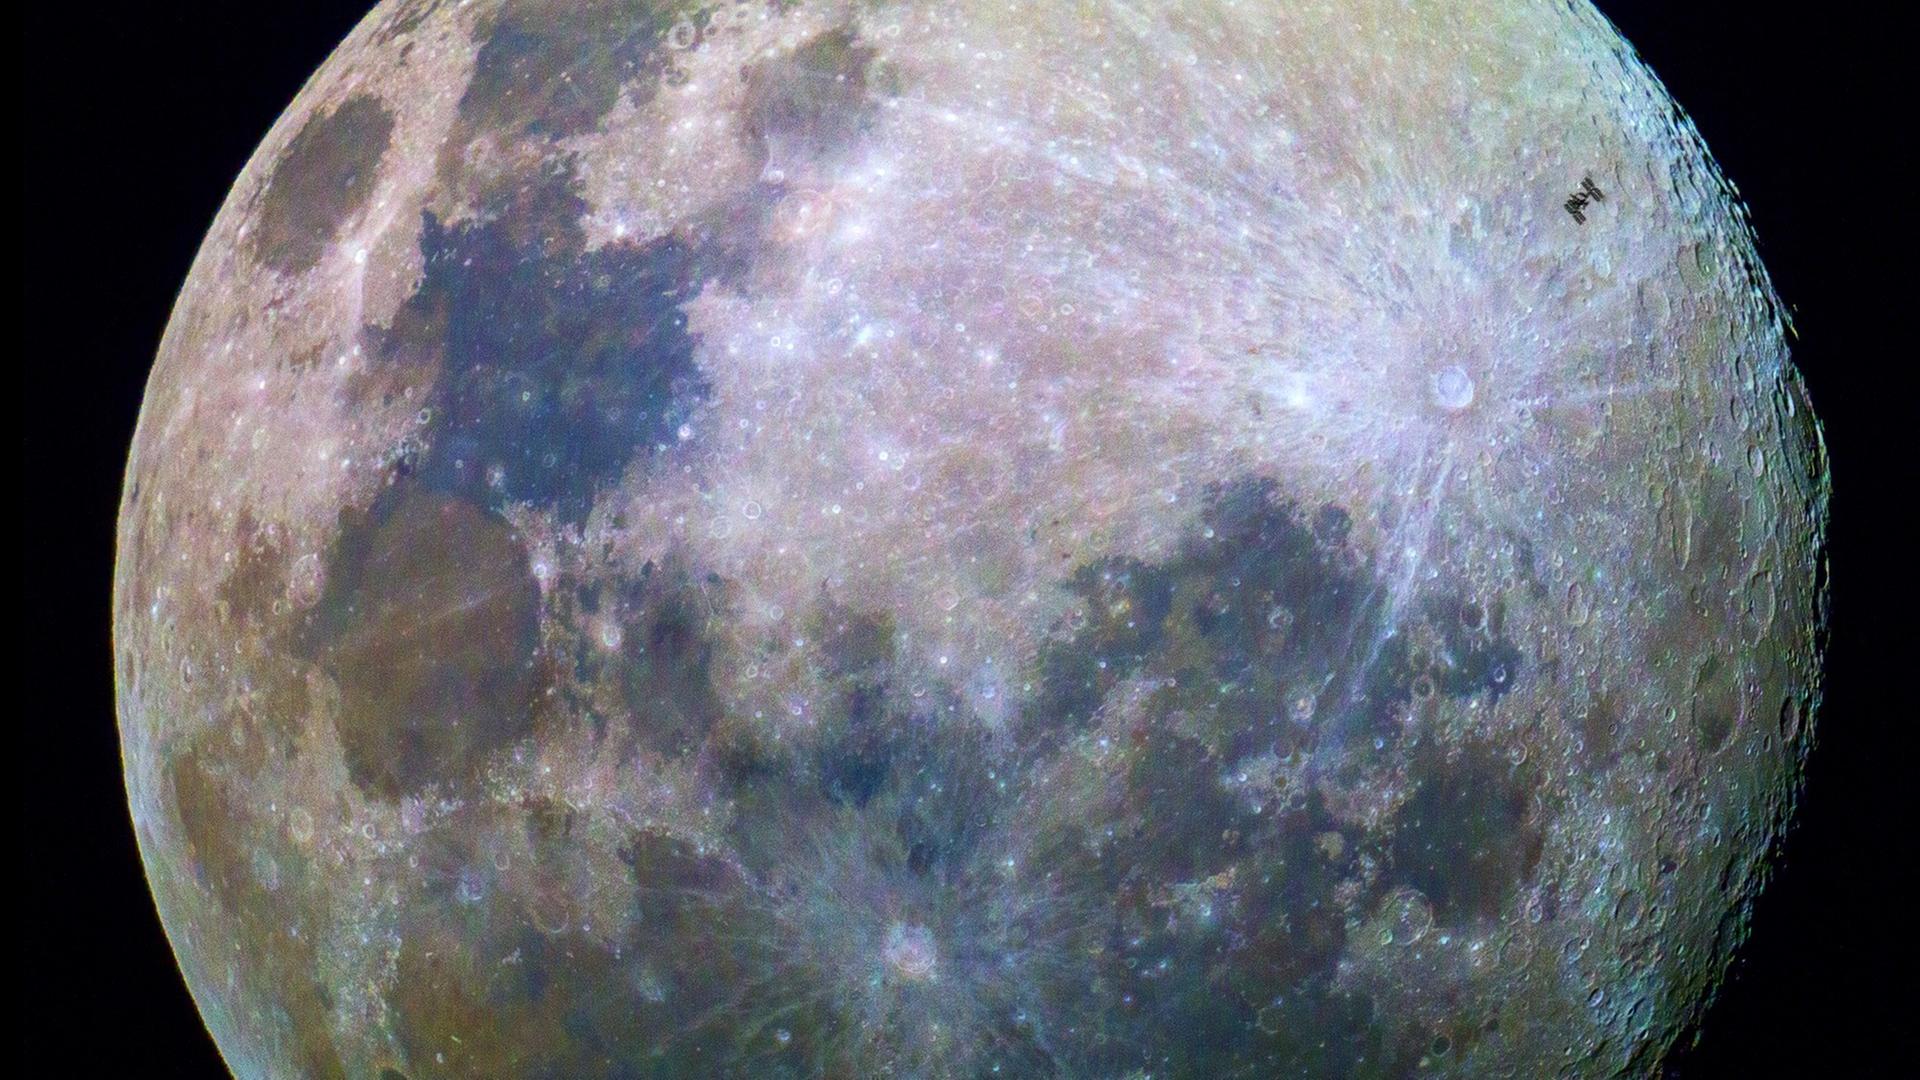 Der Vollmond morgen erscheint zwar nicht blau, aber wenn man – wie hier – die Farben des Mondes verstärkt, kann man durchaus Blautöne auf dem Mond erkennen, die Rückschlüsse auf die Verteilung der Minerale auf dem Erdtrabanten zulassen